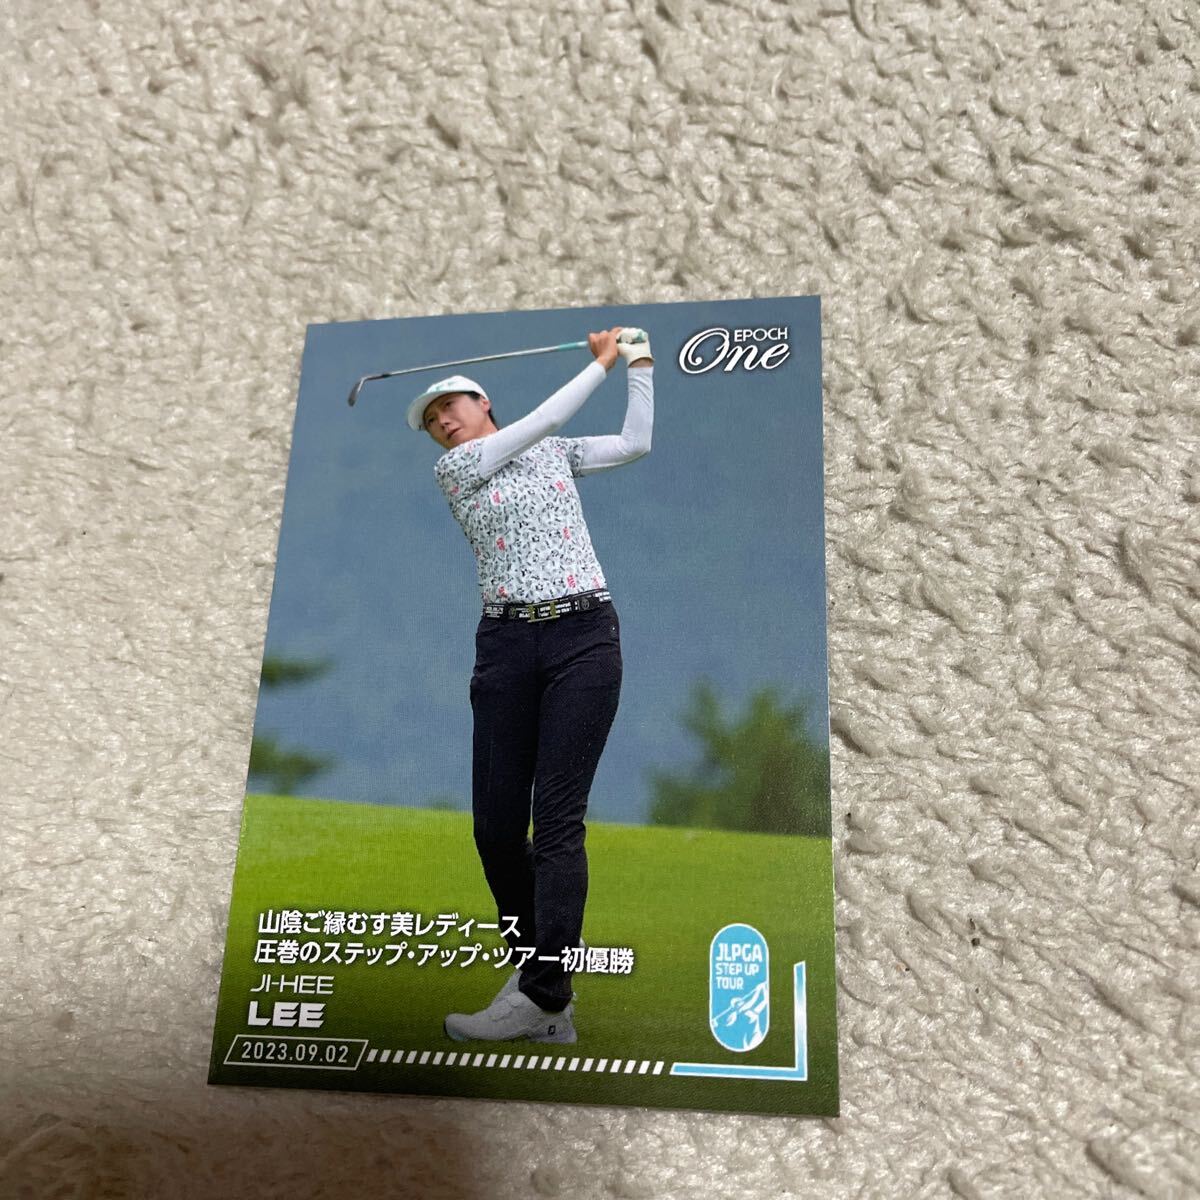 プロゴルファー李知姫ステップアップツアー初優勝カードの画像1